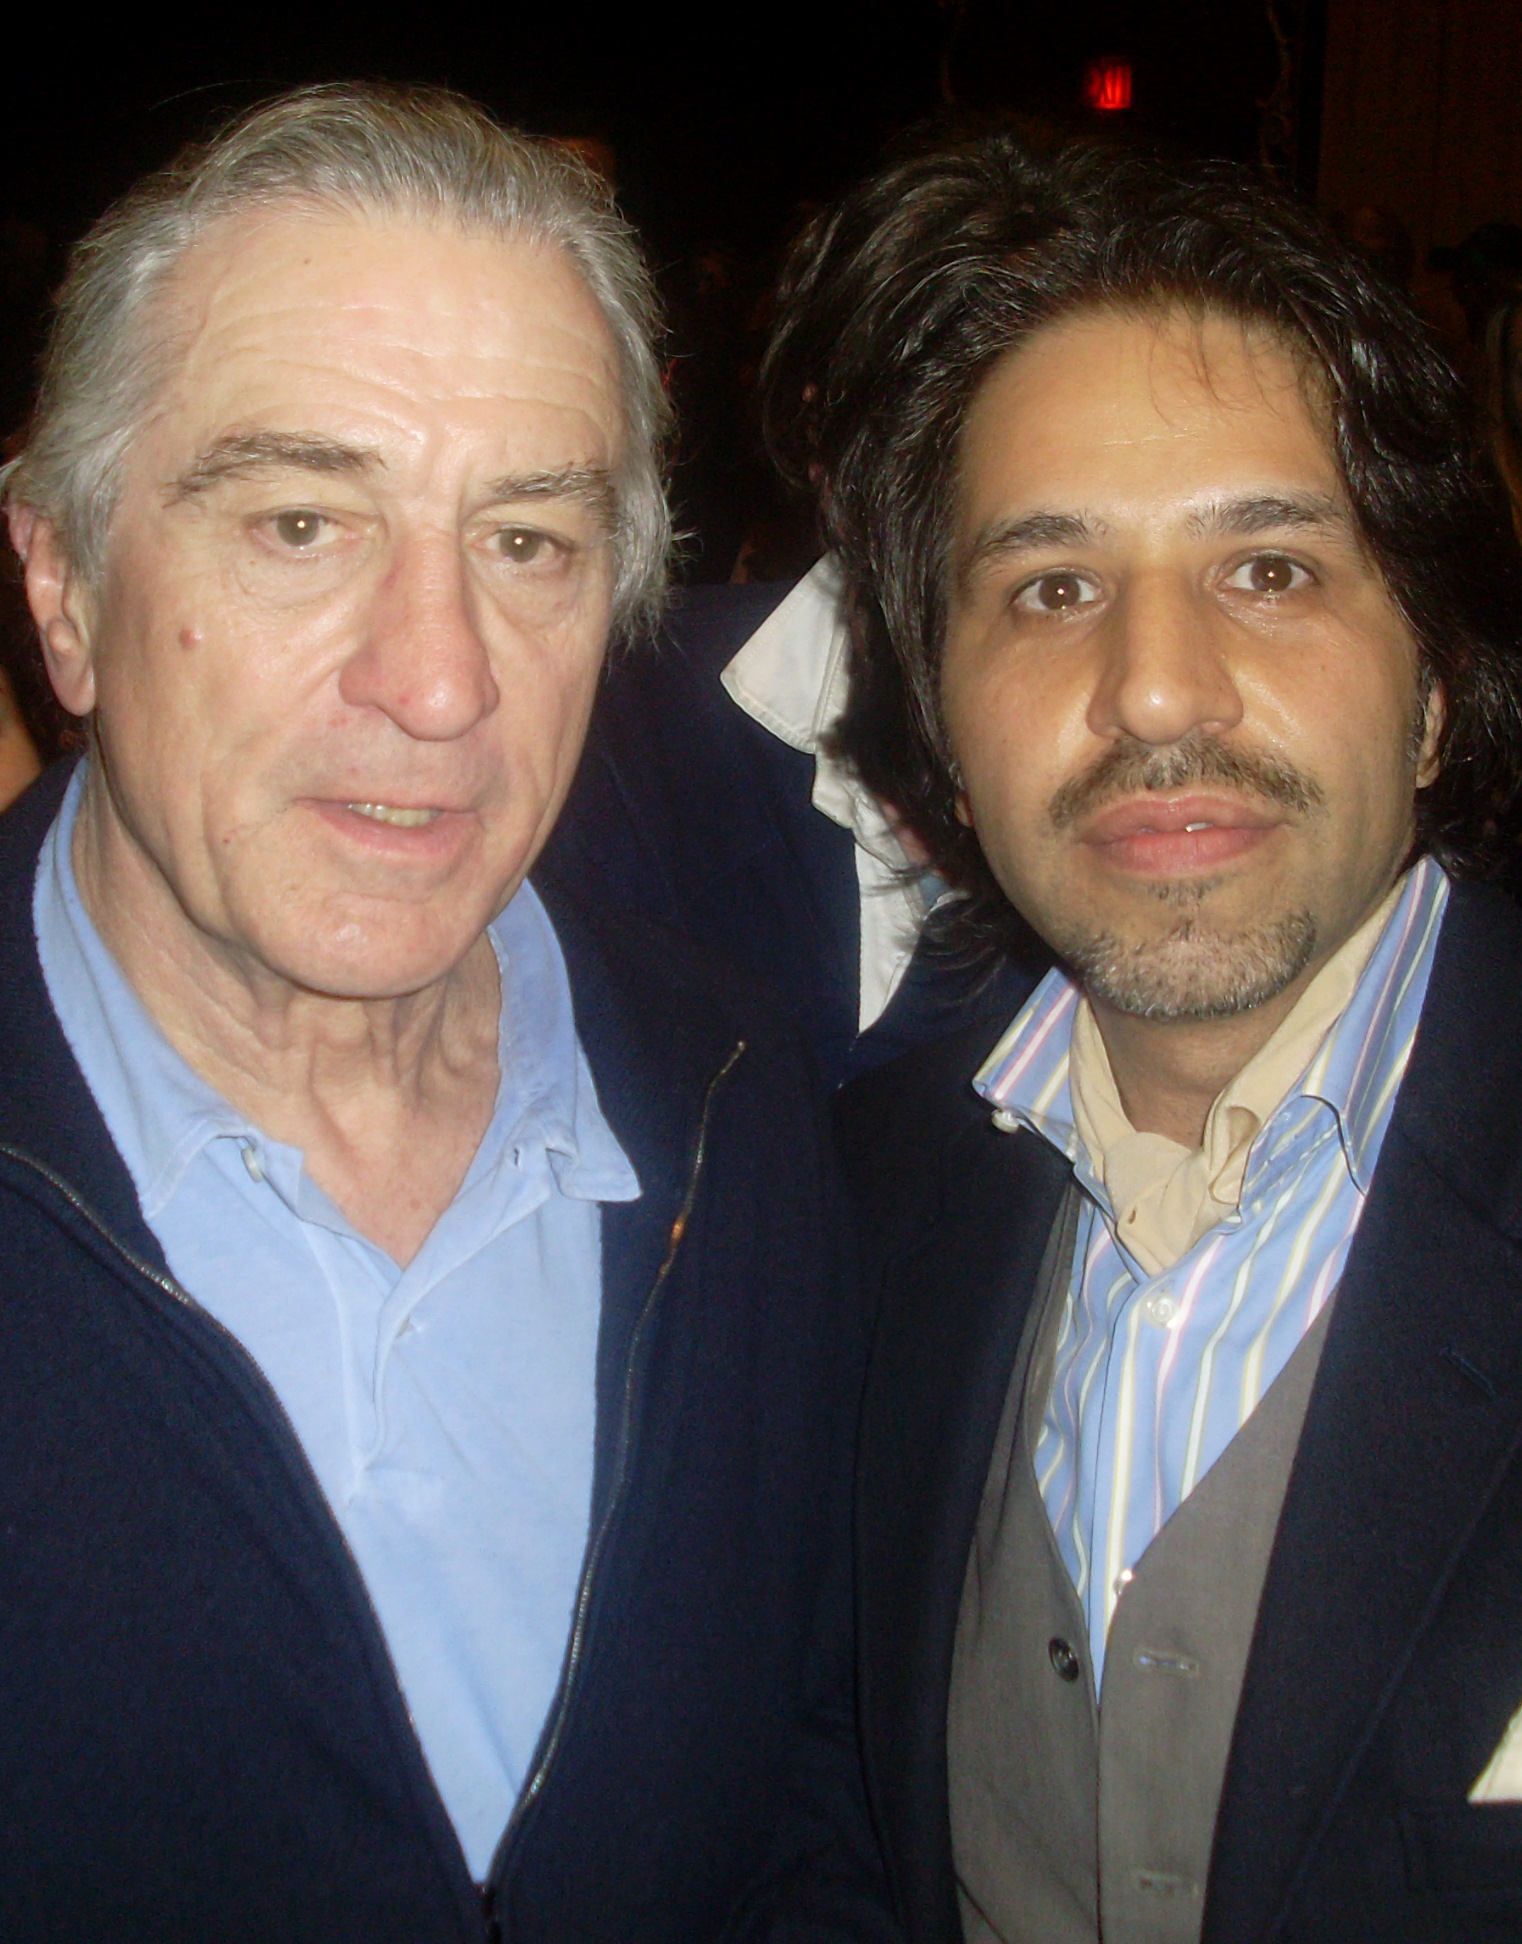 Frank with Robert De Niro